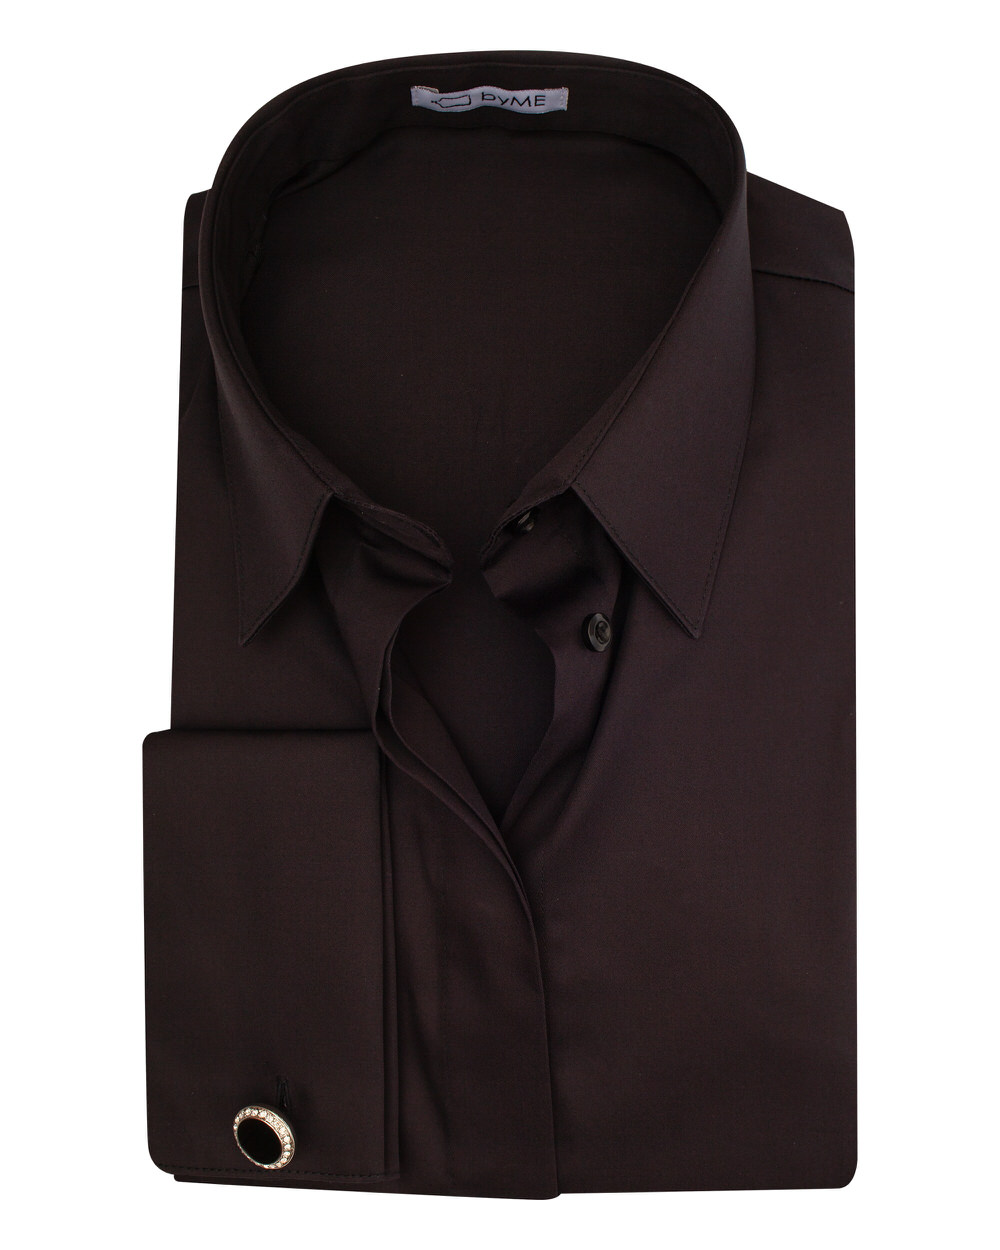 Женская рубашка под запонку приталенная с супатной застежкой без отделки черная- 8132 от byME 